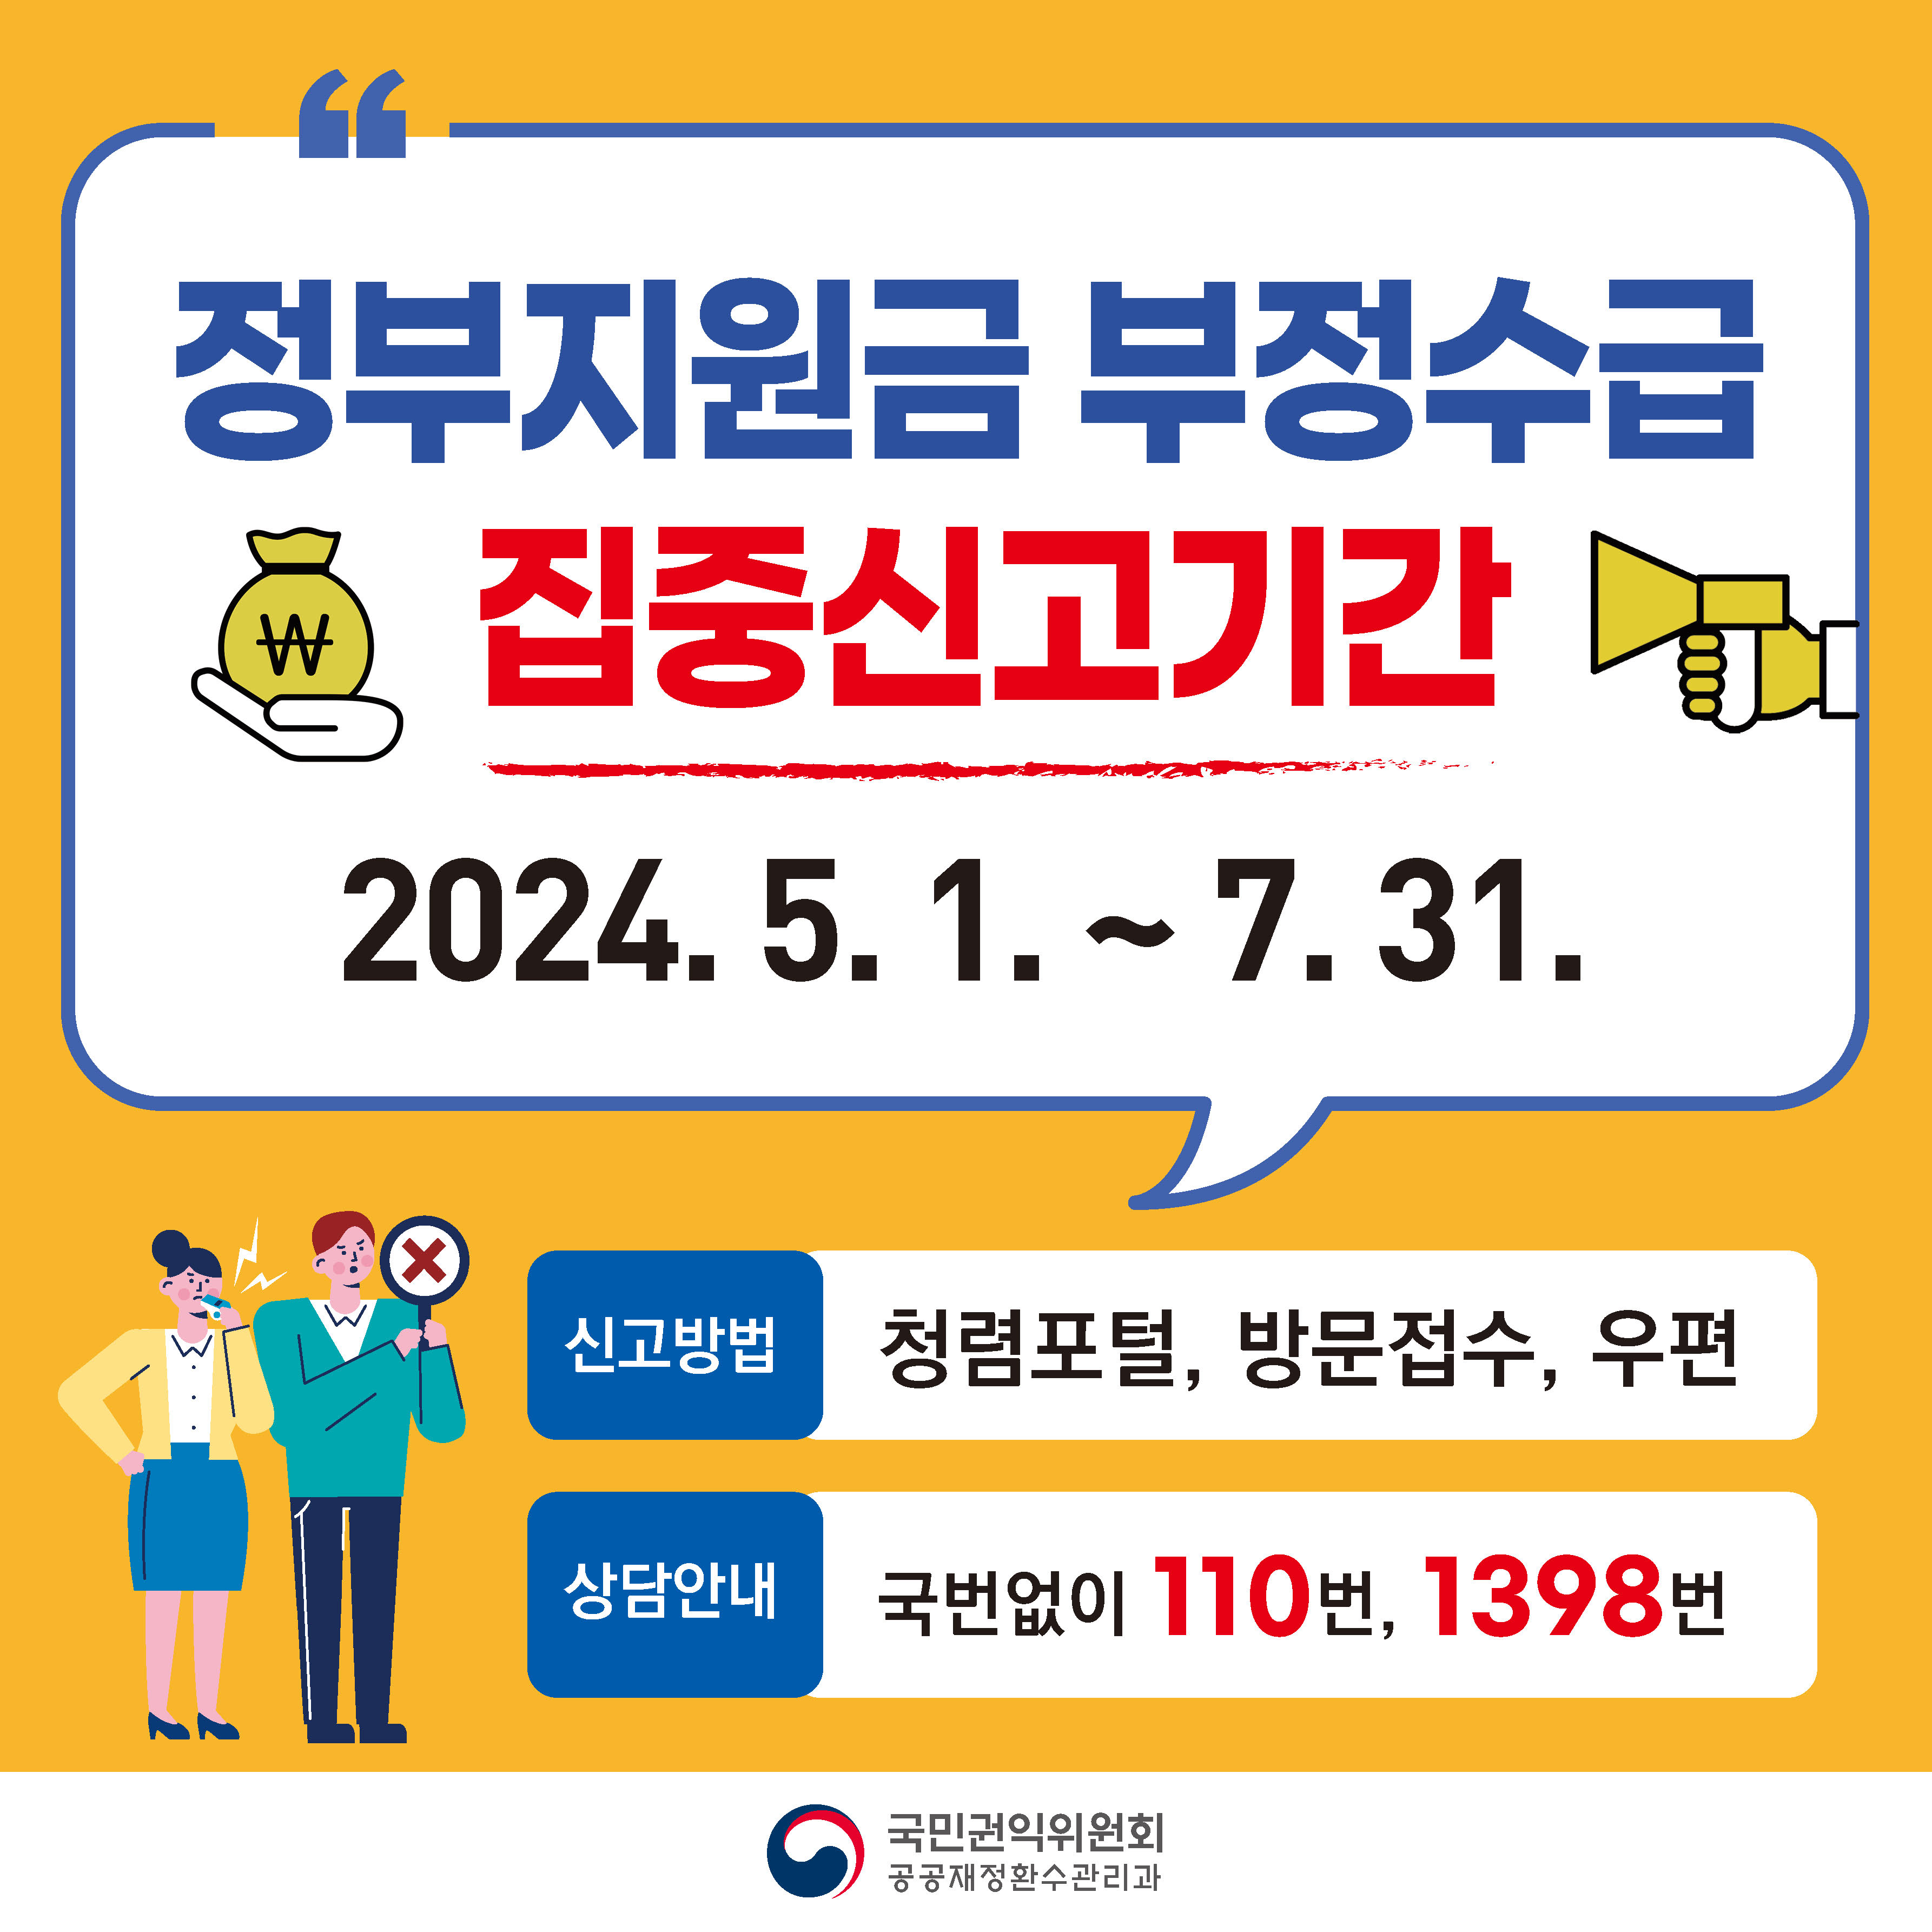 정부지원금 부정수급 집중신고기간 운영. 국민권익위원회